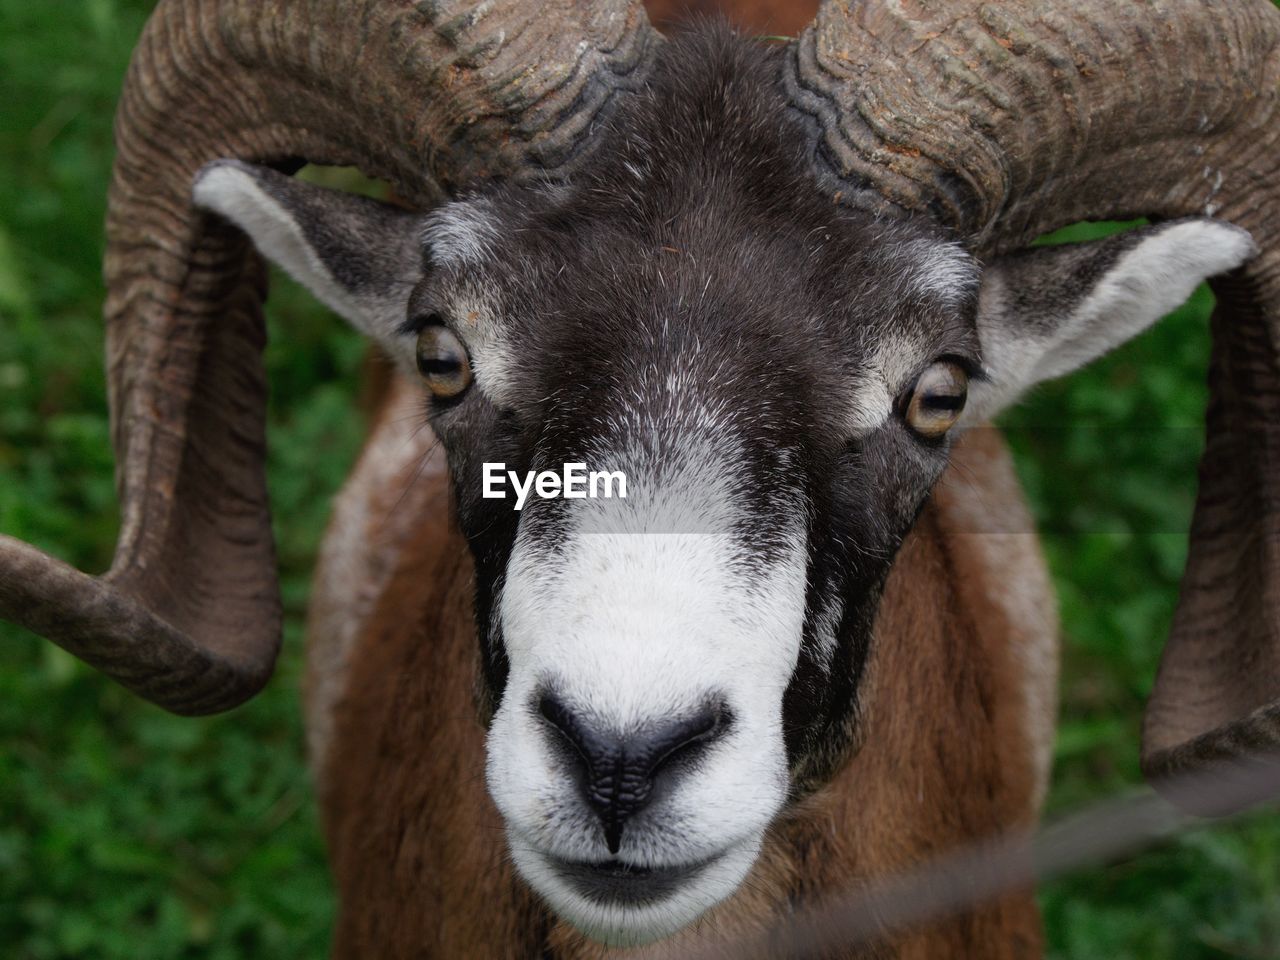 Close-up portrait of a mouflon sheep